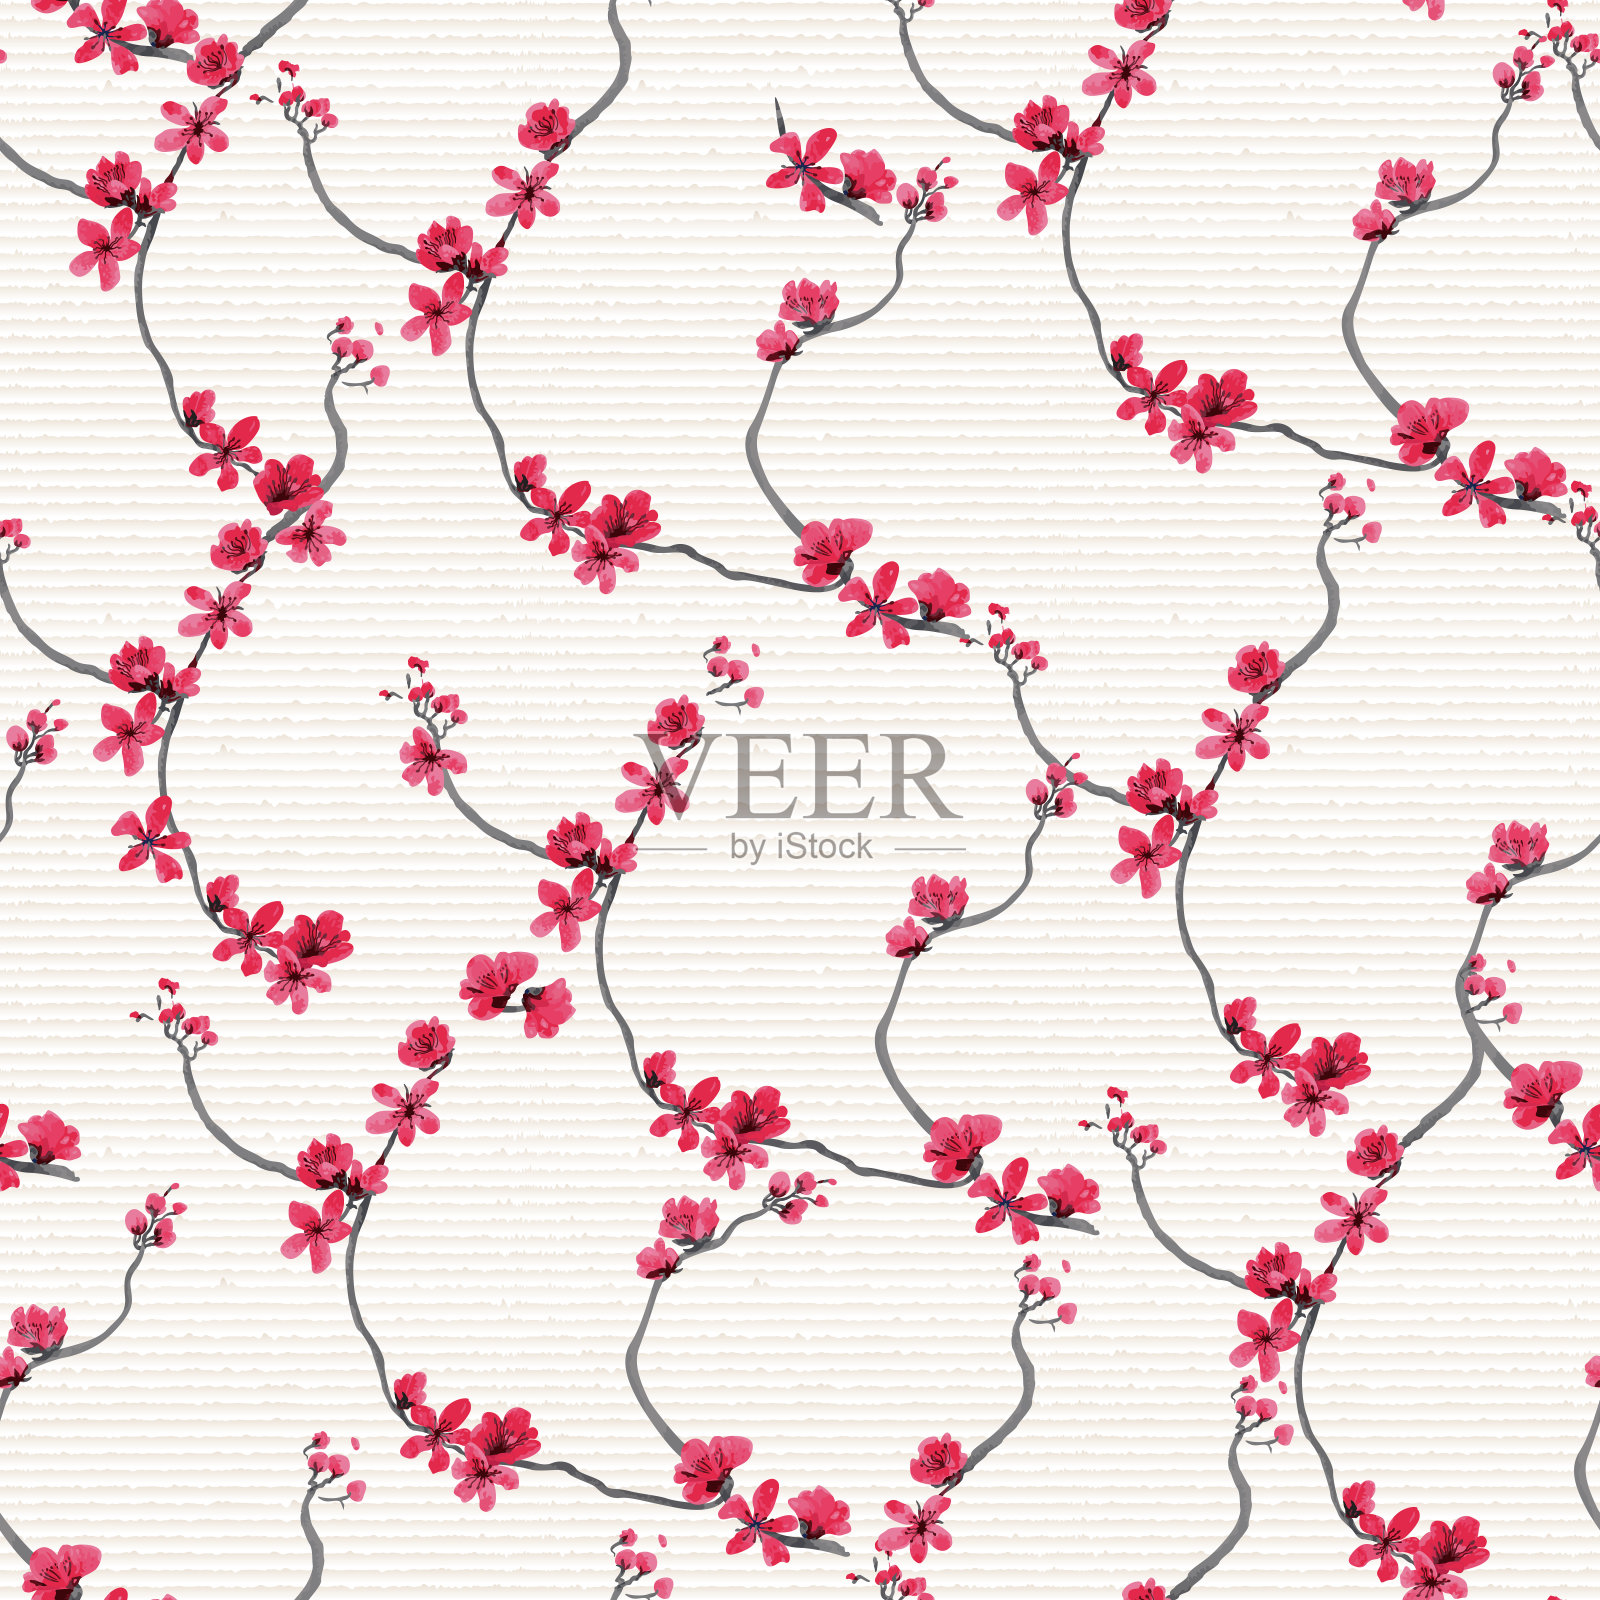 矢量无缝图案的粉红色盛开的树枝手绘中国粉梅花在日本民间绘画风格的Sumi-e宣纸上。蜡染、墙纸、真丝印花、东方新年贺卡插画图片素材